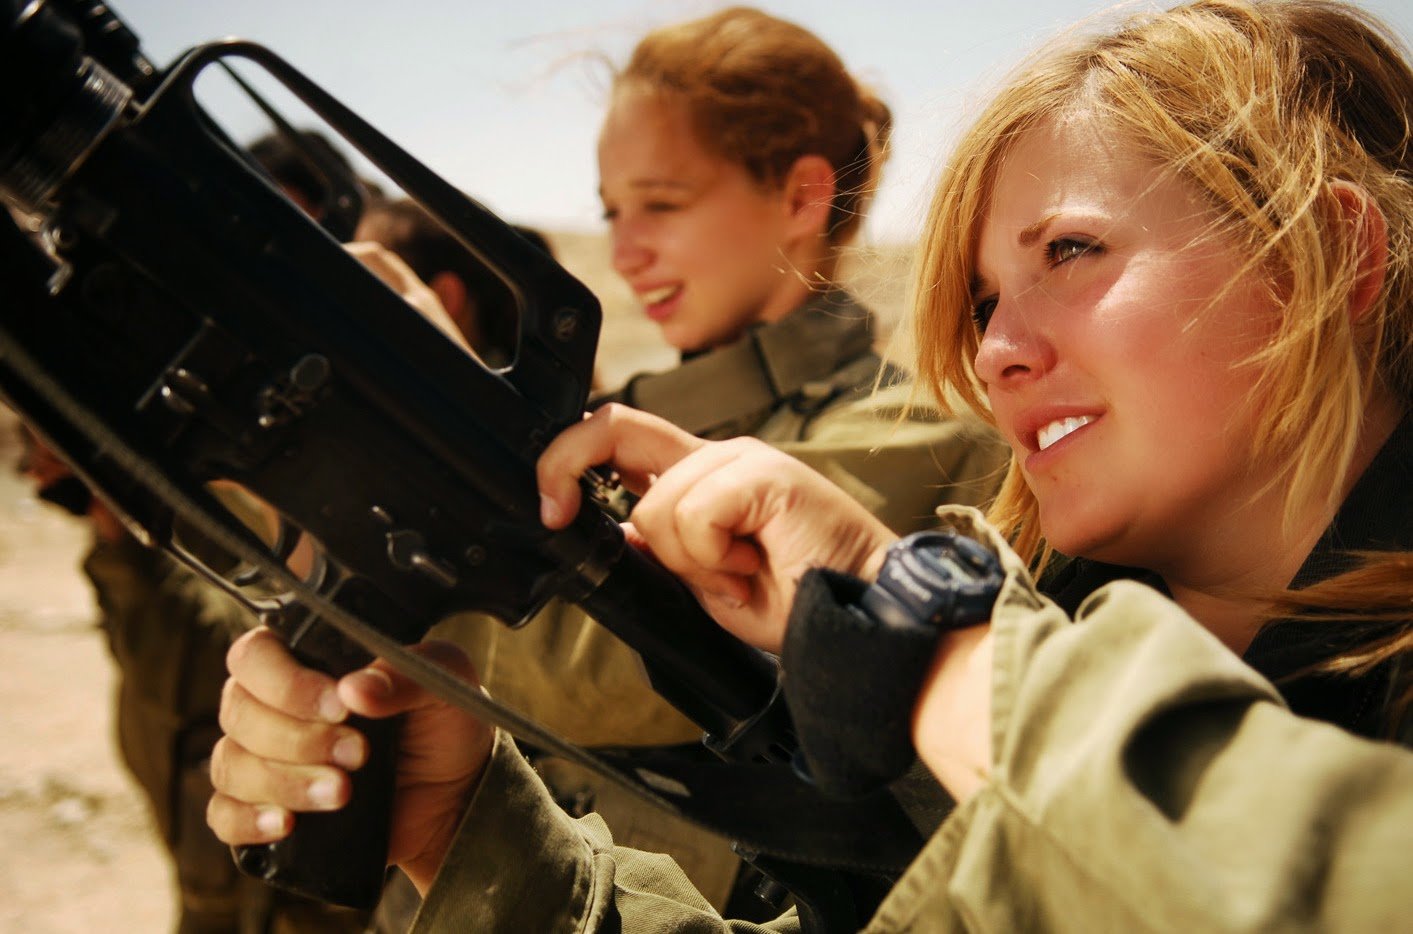 Άρωμα.Αρβύλας | 5 λόγοι που οι γυναίκες δεν πρέπει να μπουν στο στρατό ως έφεδρες